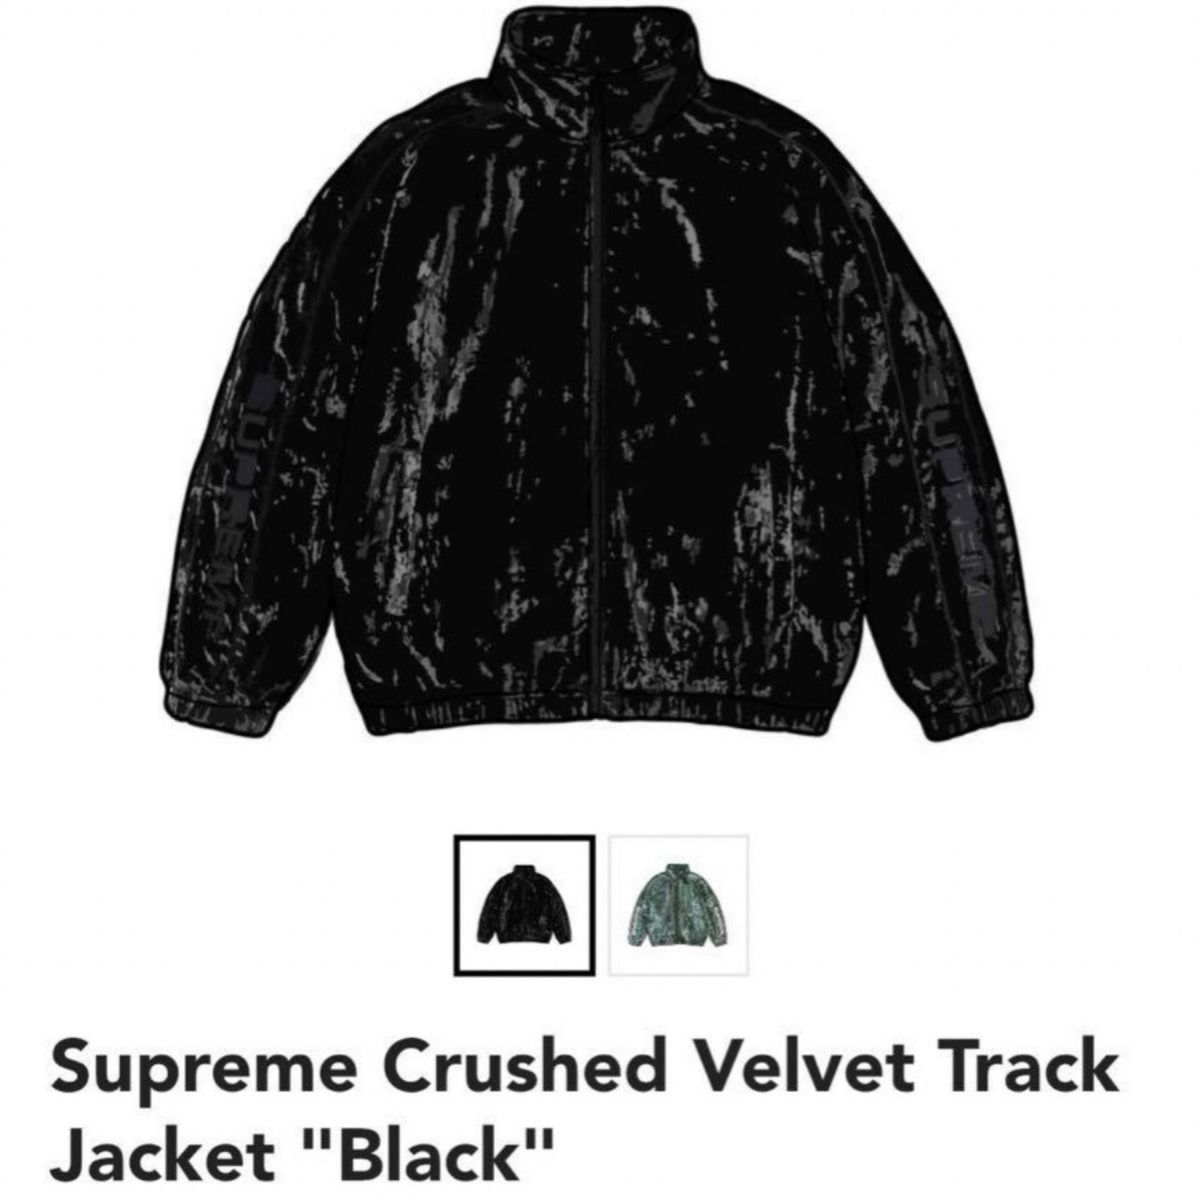 Supreme Crushed Velvet Track Jacket